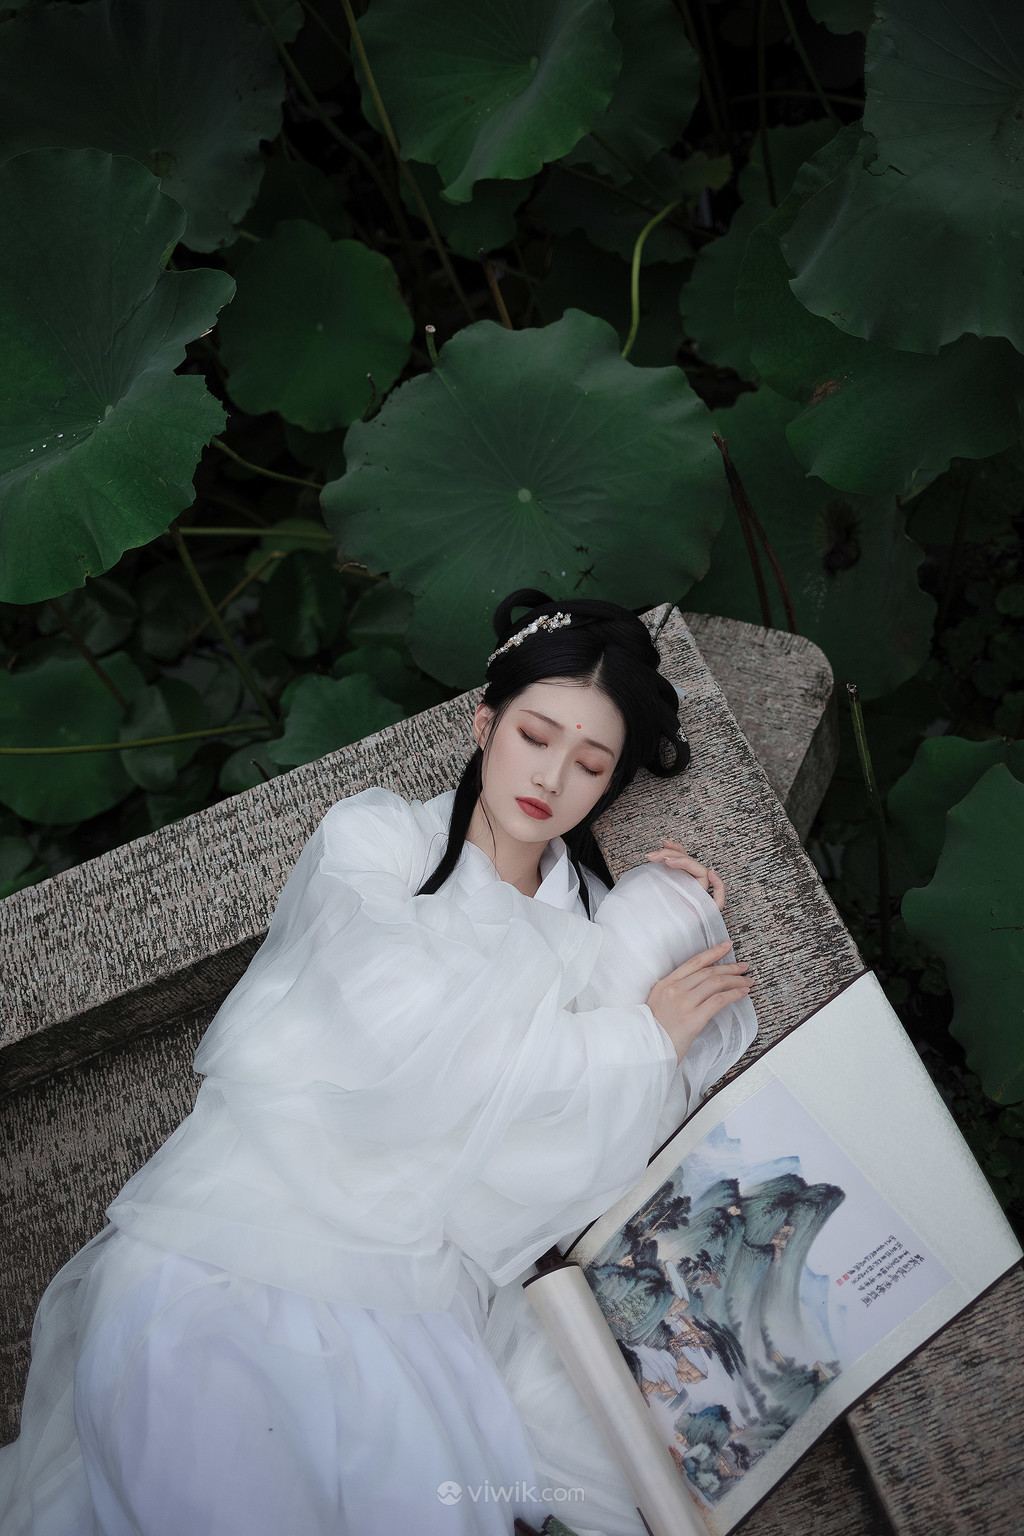 躺在地上的白衣古装美女艺术照写真图片